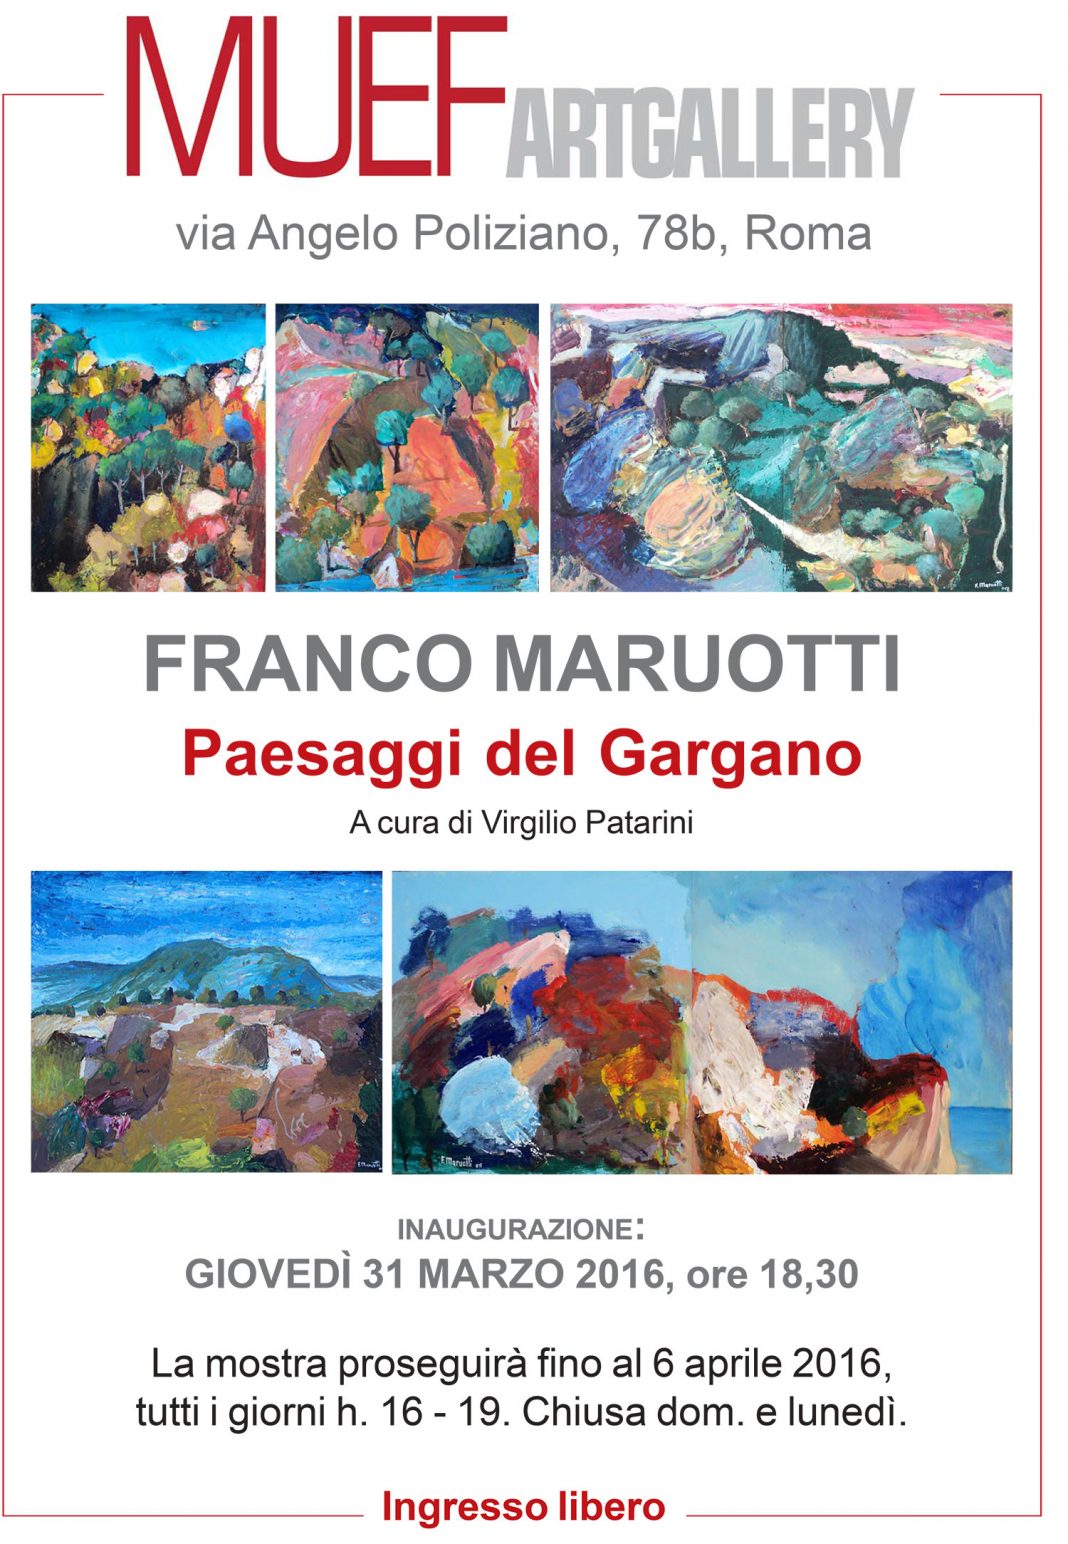 Franco Maruotti -Paesaggi del Garganohttps://www.exibart.com/repository/media/eventi/2016/03/franco-maruotti-paesaggi-del-gargano-1068x1544.jpg